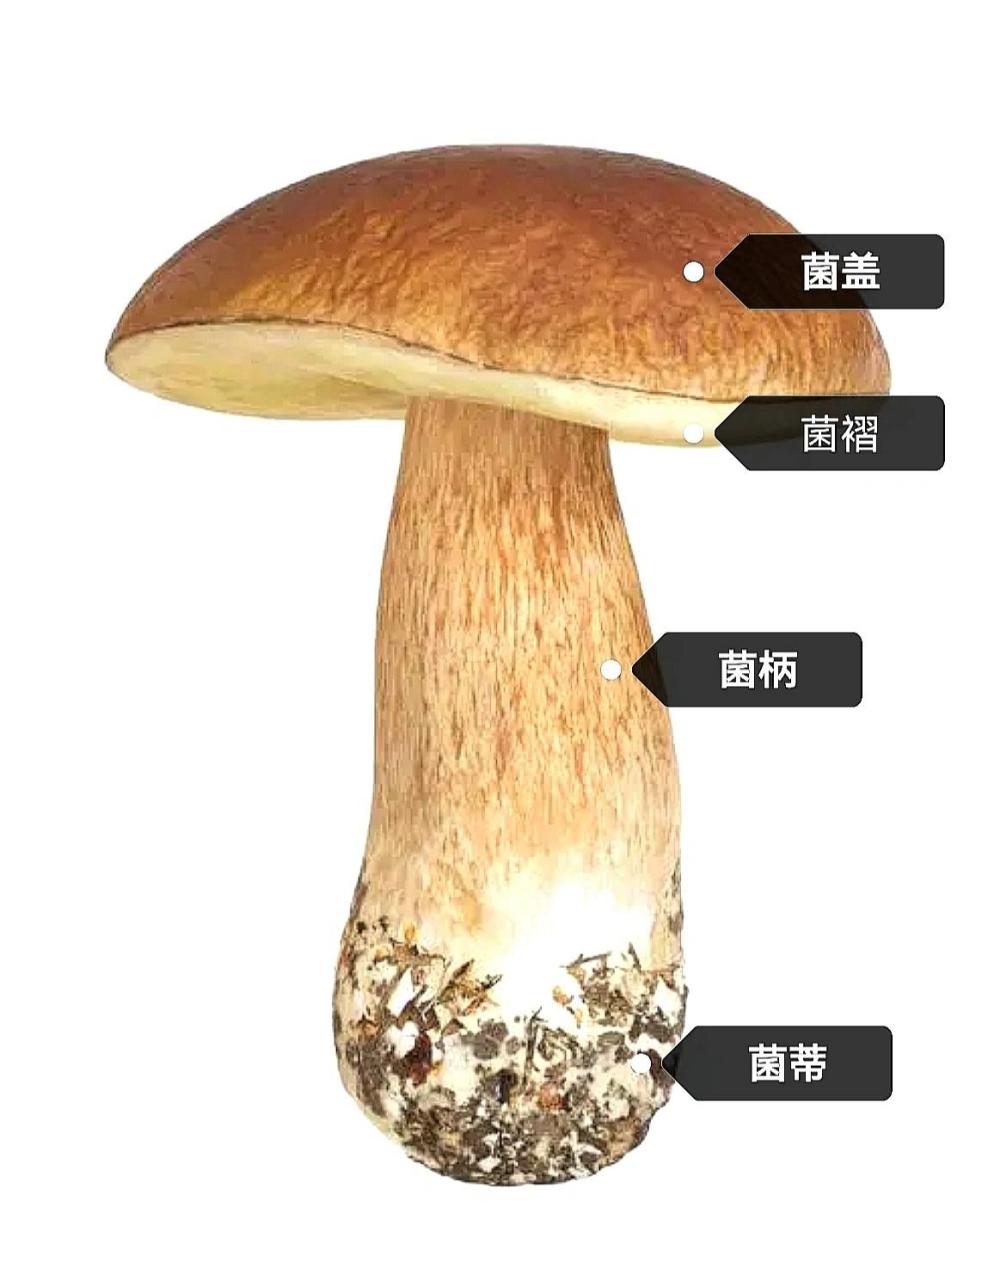 蘑菇的构造 蘑菇是一种营养丰富的食材,内含多种微量元素和膳食纤维